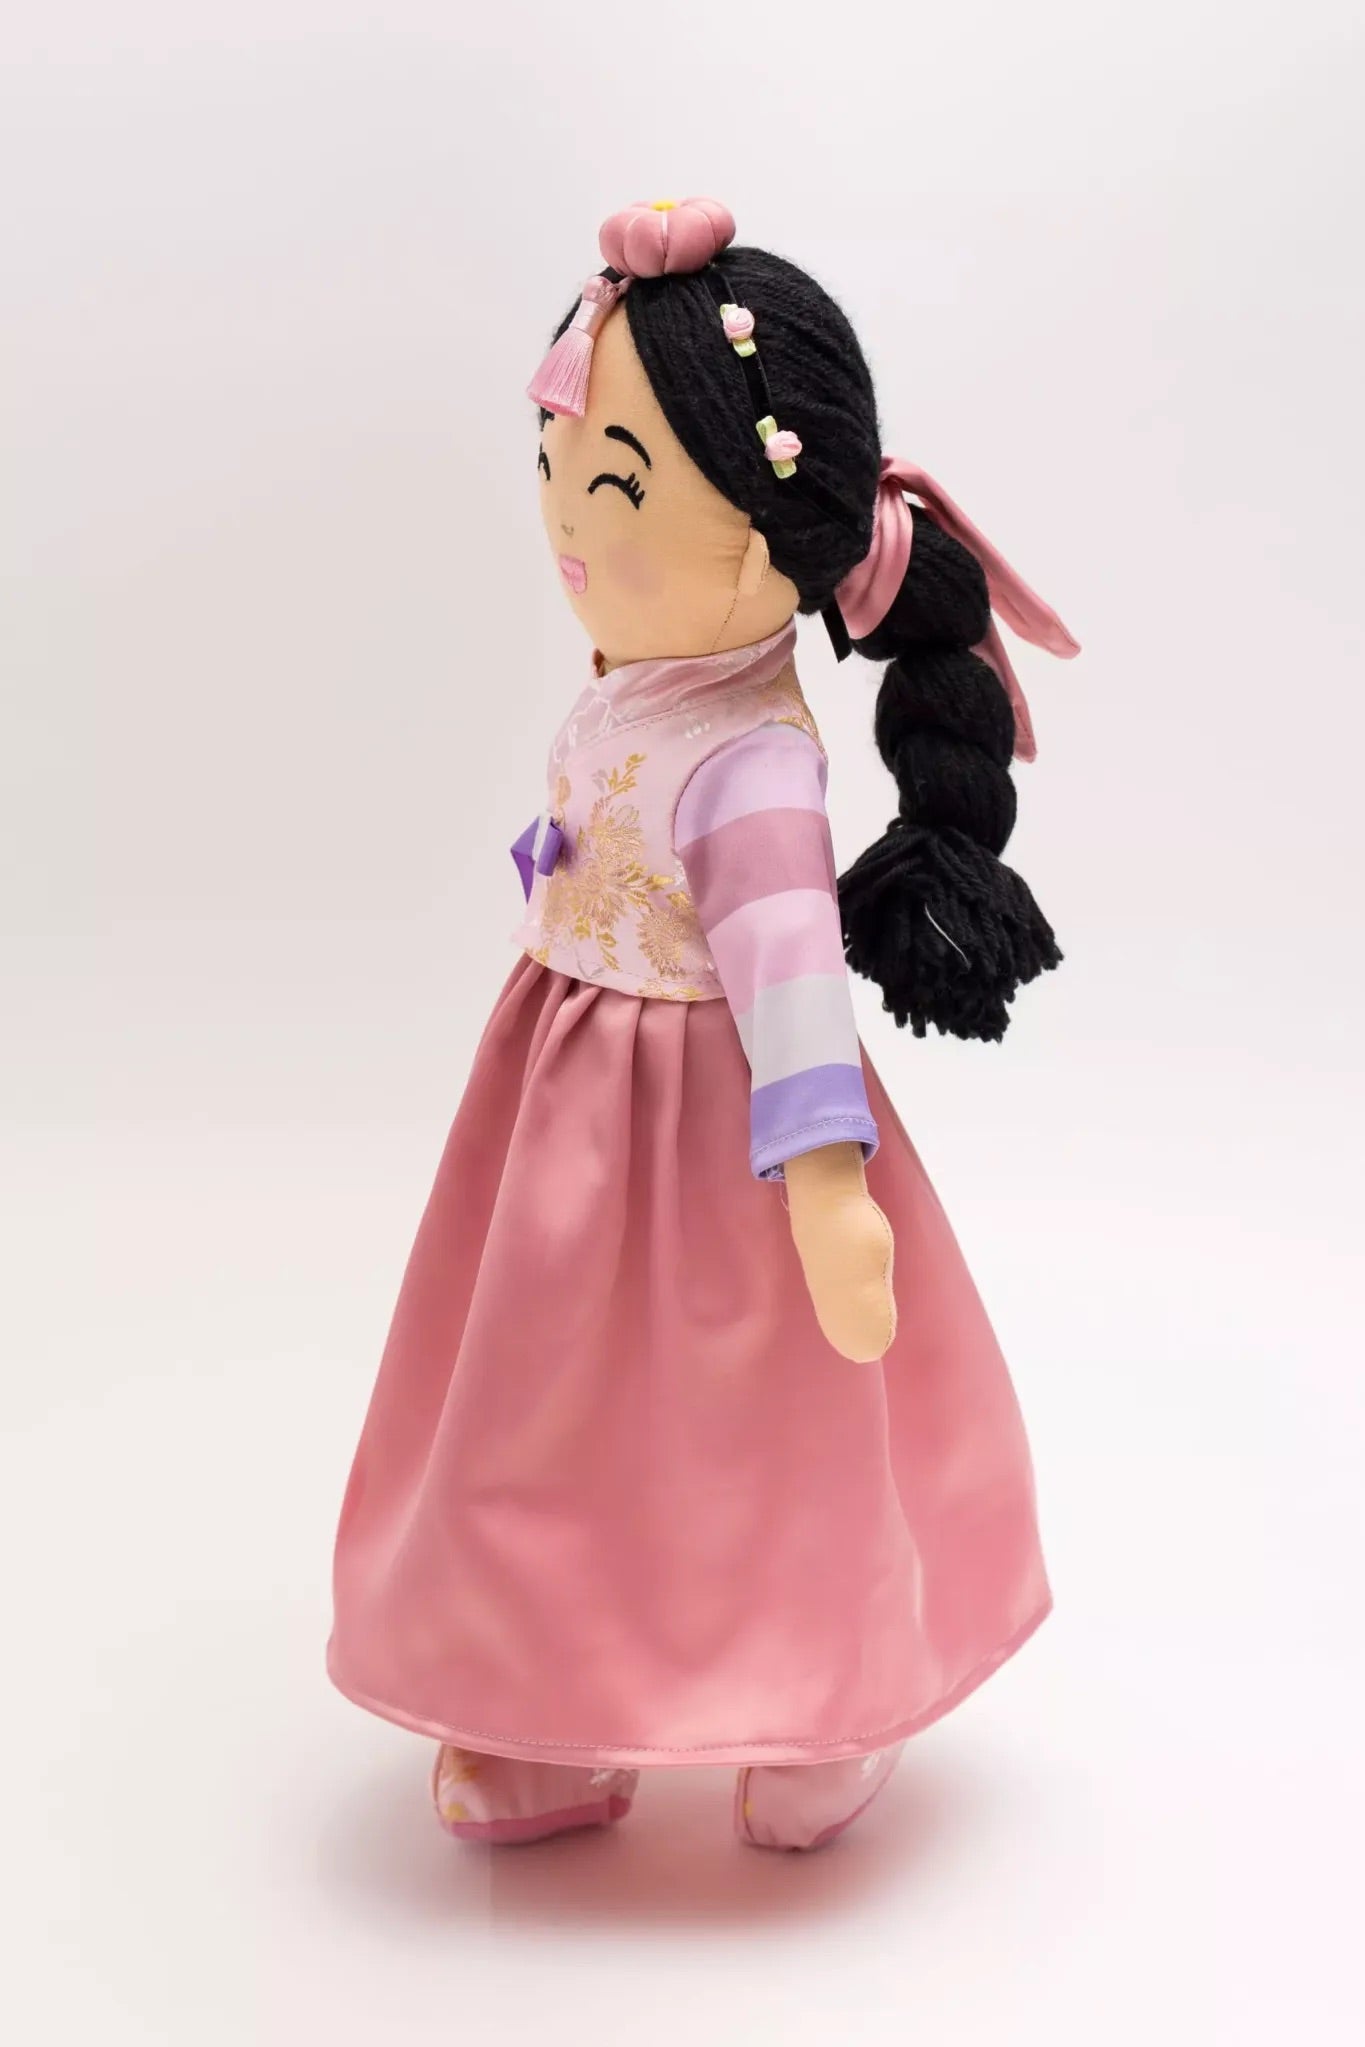 Korean 'Danbi' Cultural Doll